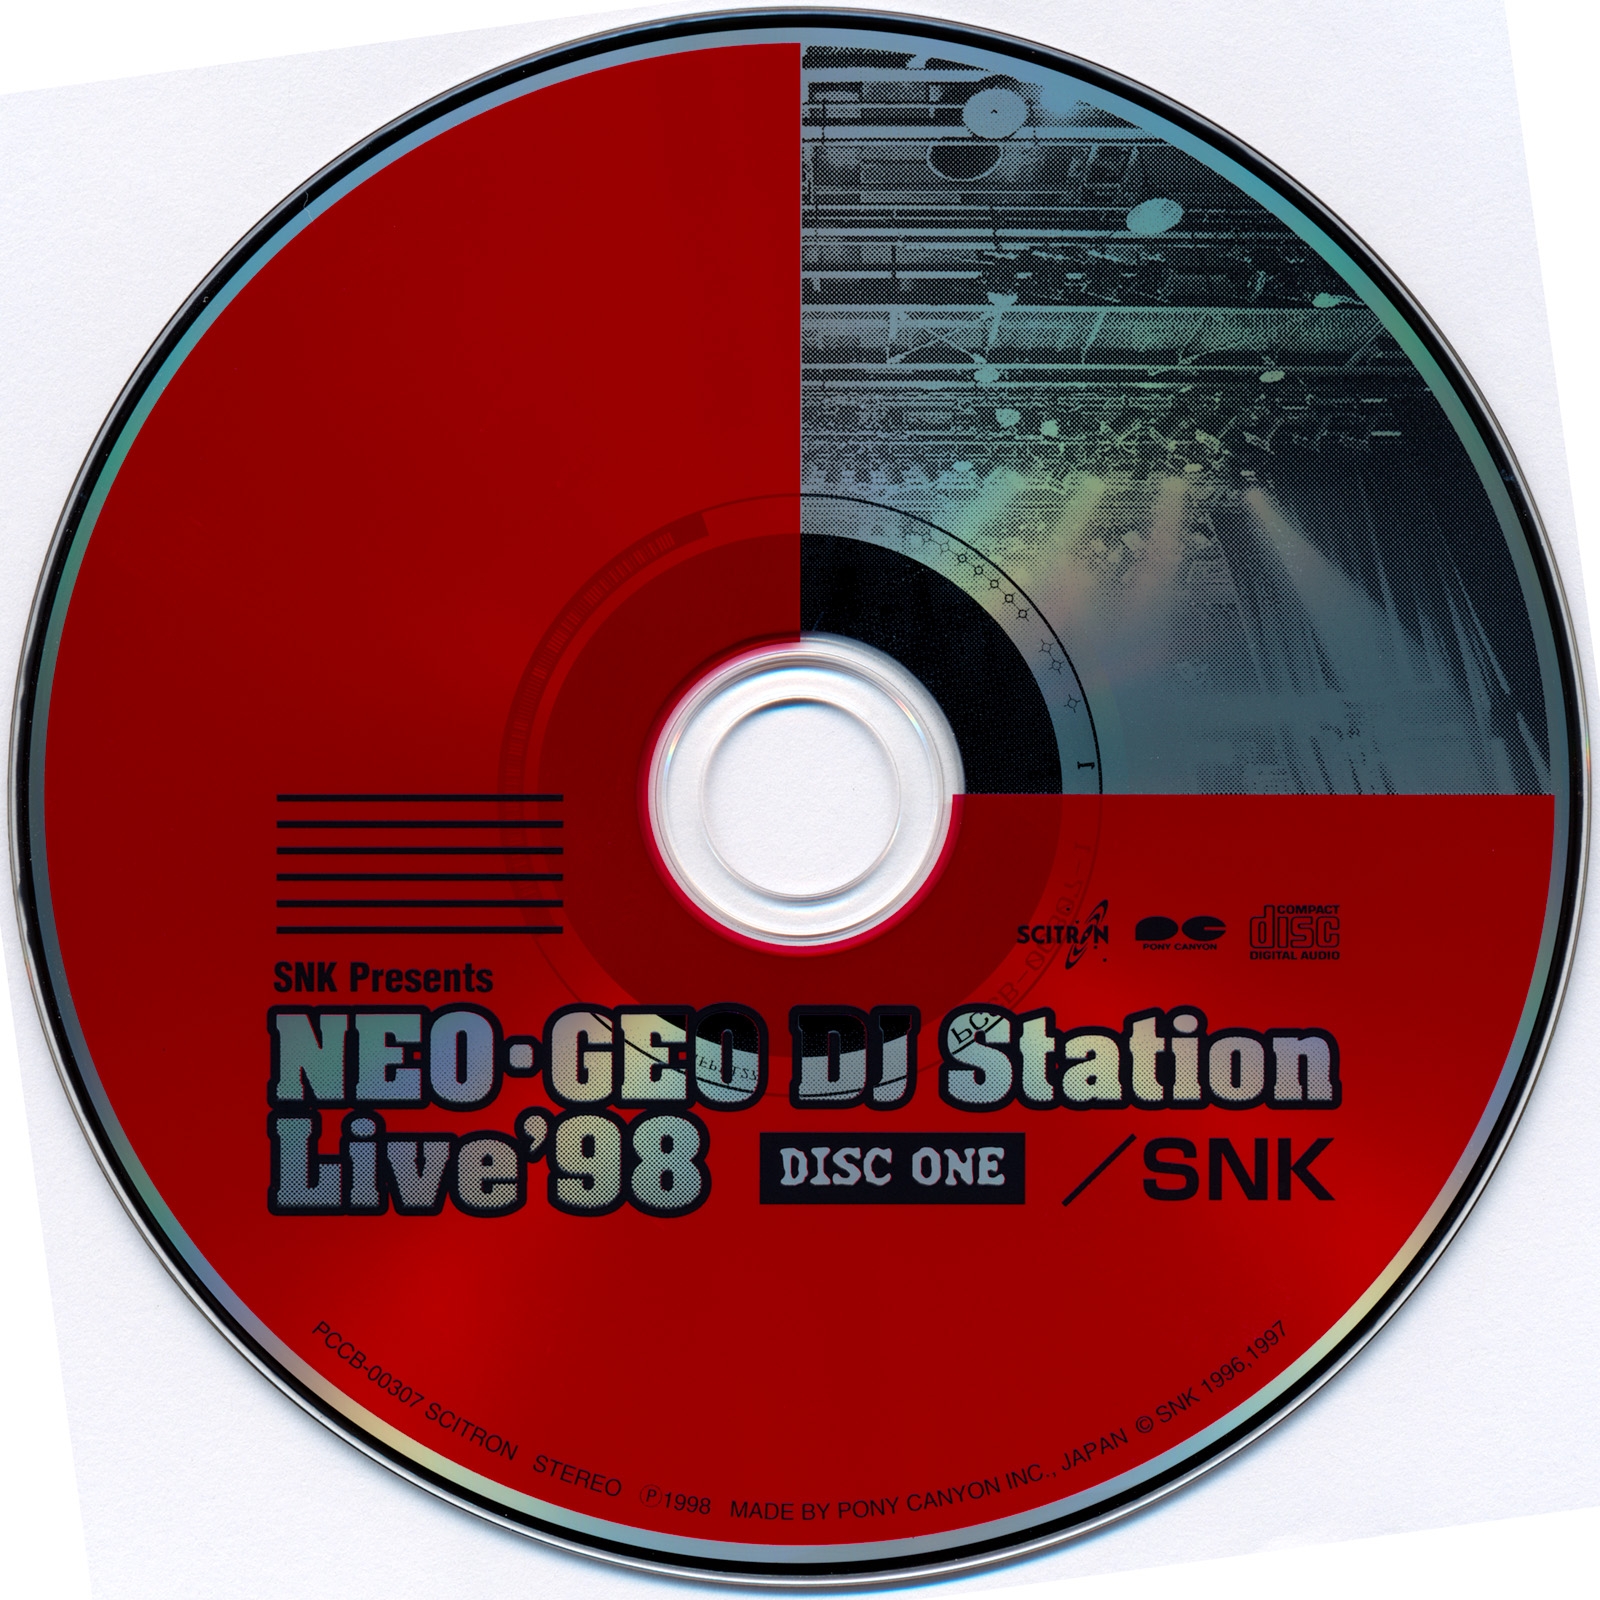 NEO-GEO DJ Station Live '98 (1998) MP3 - Download NEO-GEO DJ Station Live ' 98 (1998) Soundtracks for FREE!